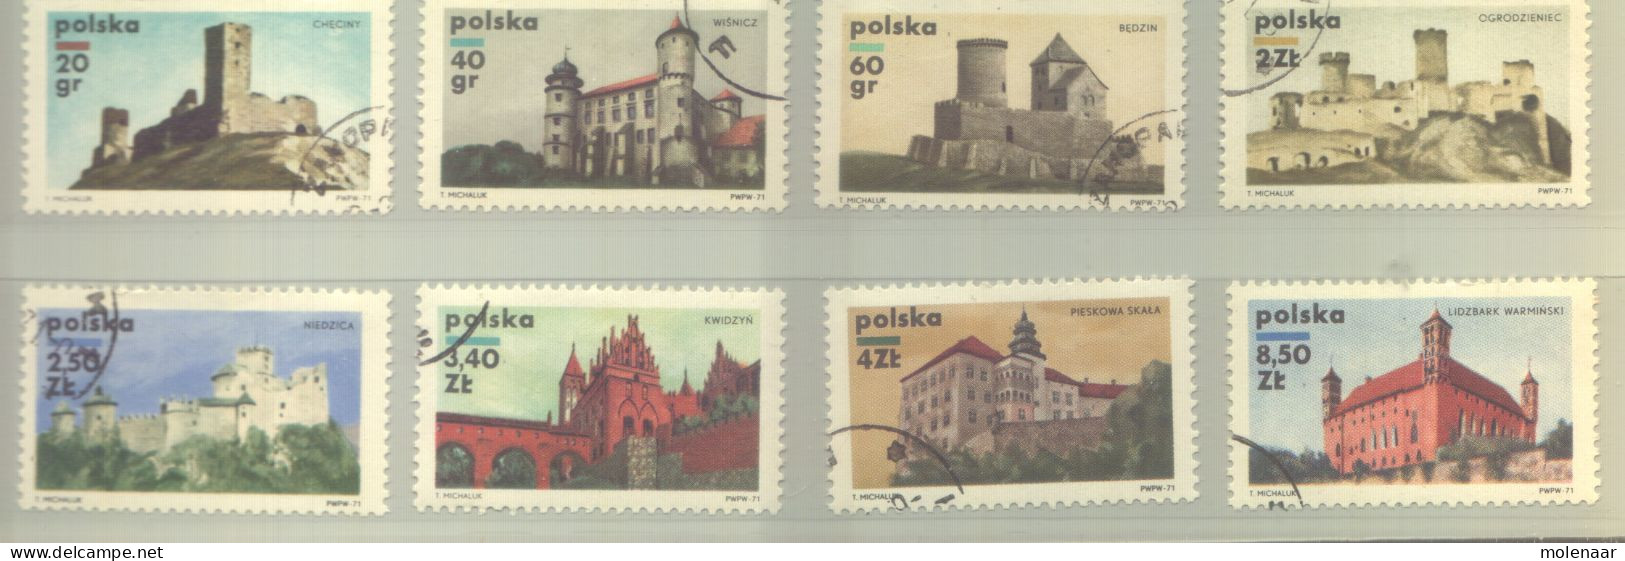 Postzegels > Europa > Polen > 1944-.... Republiek > 1981-90 > Gebruikt 2054-2061 (12190) - Gebruikt